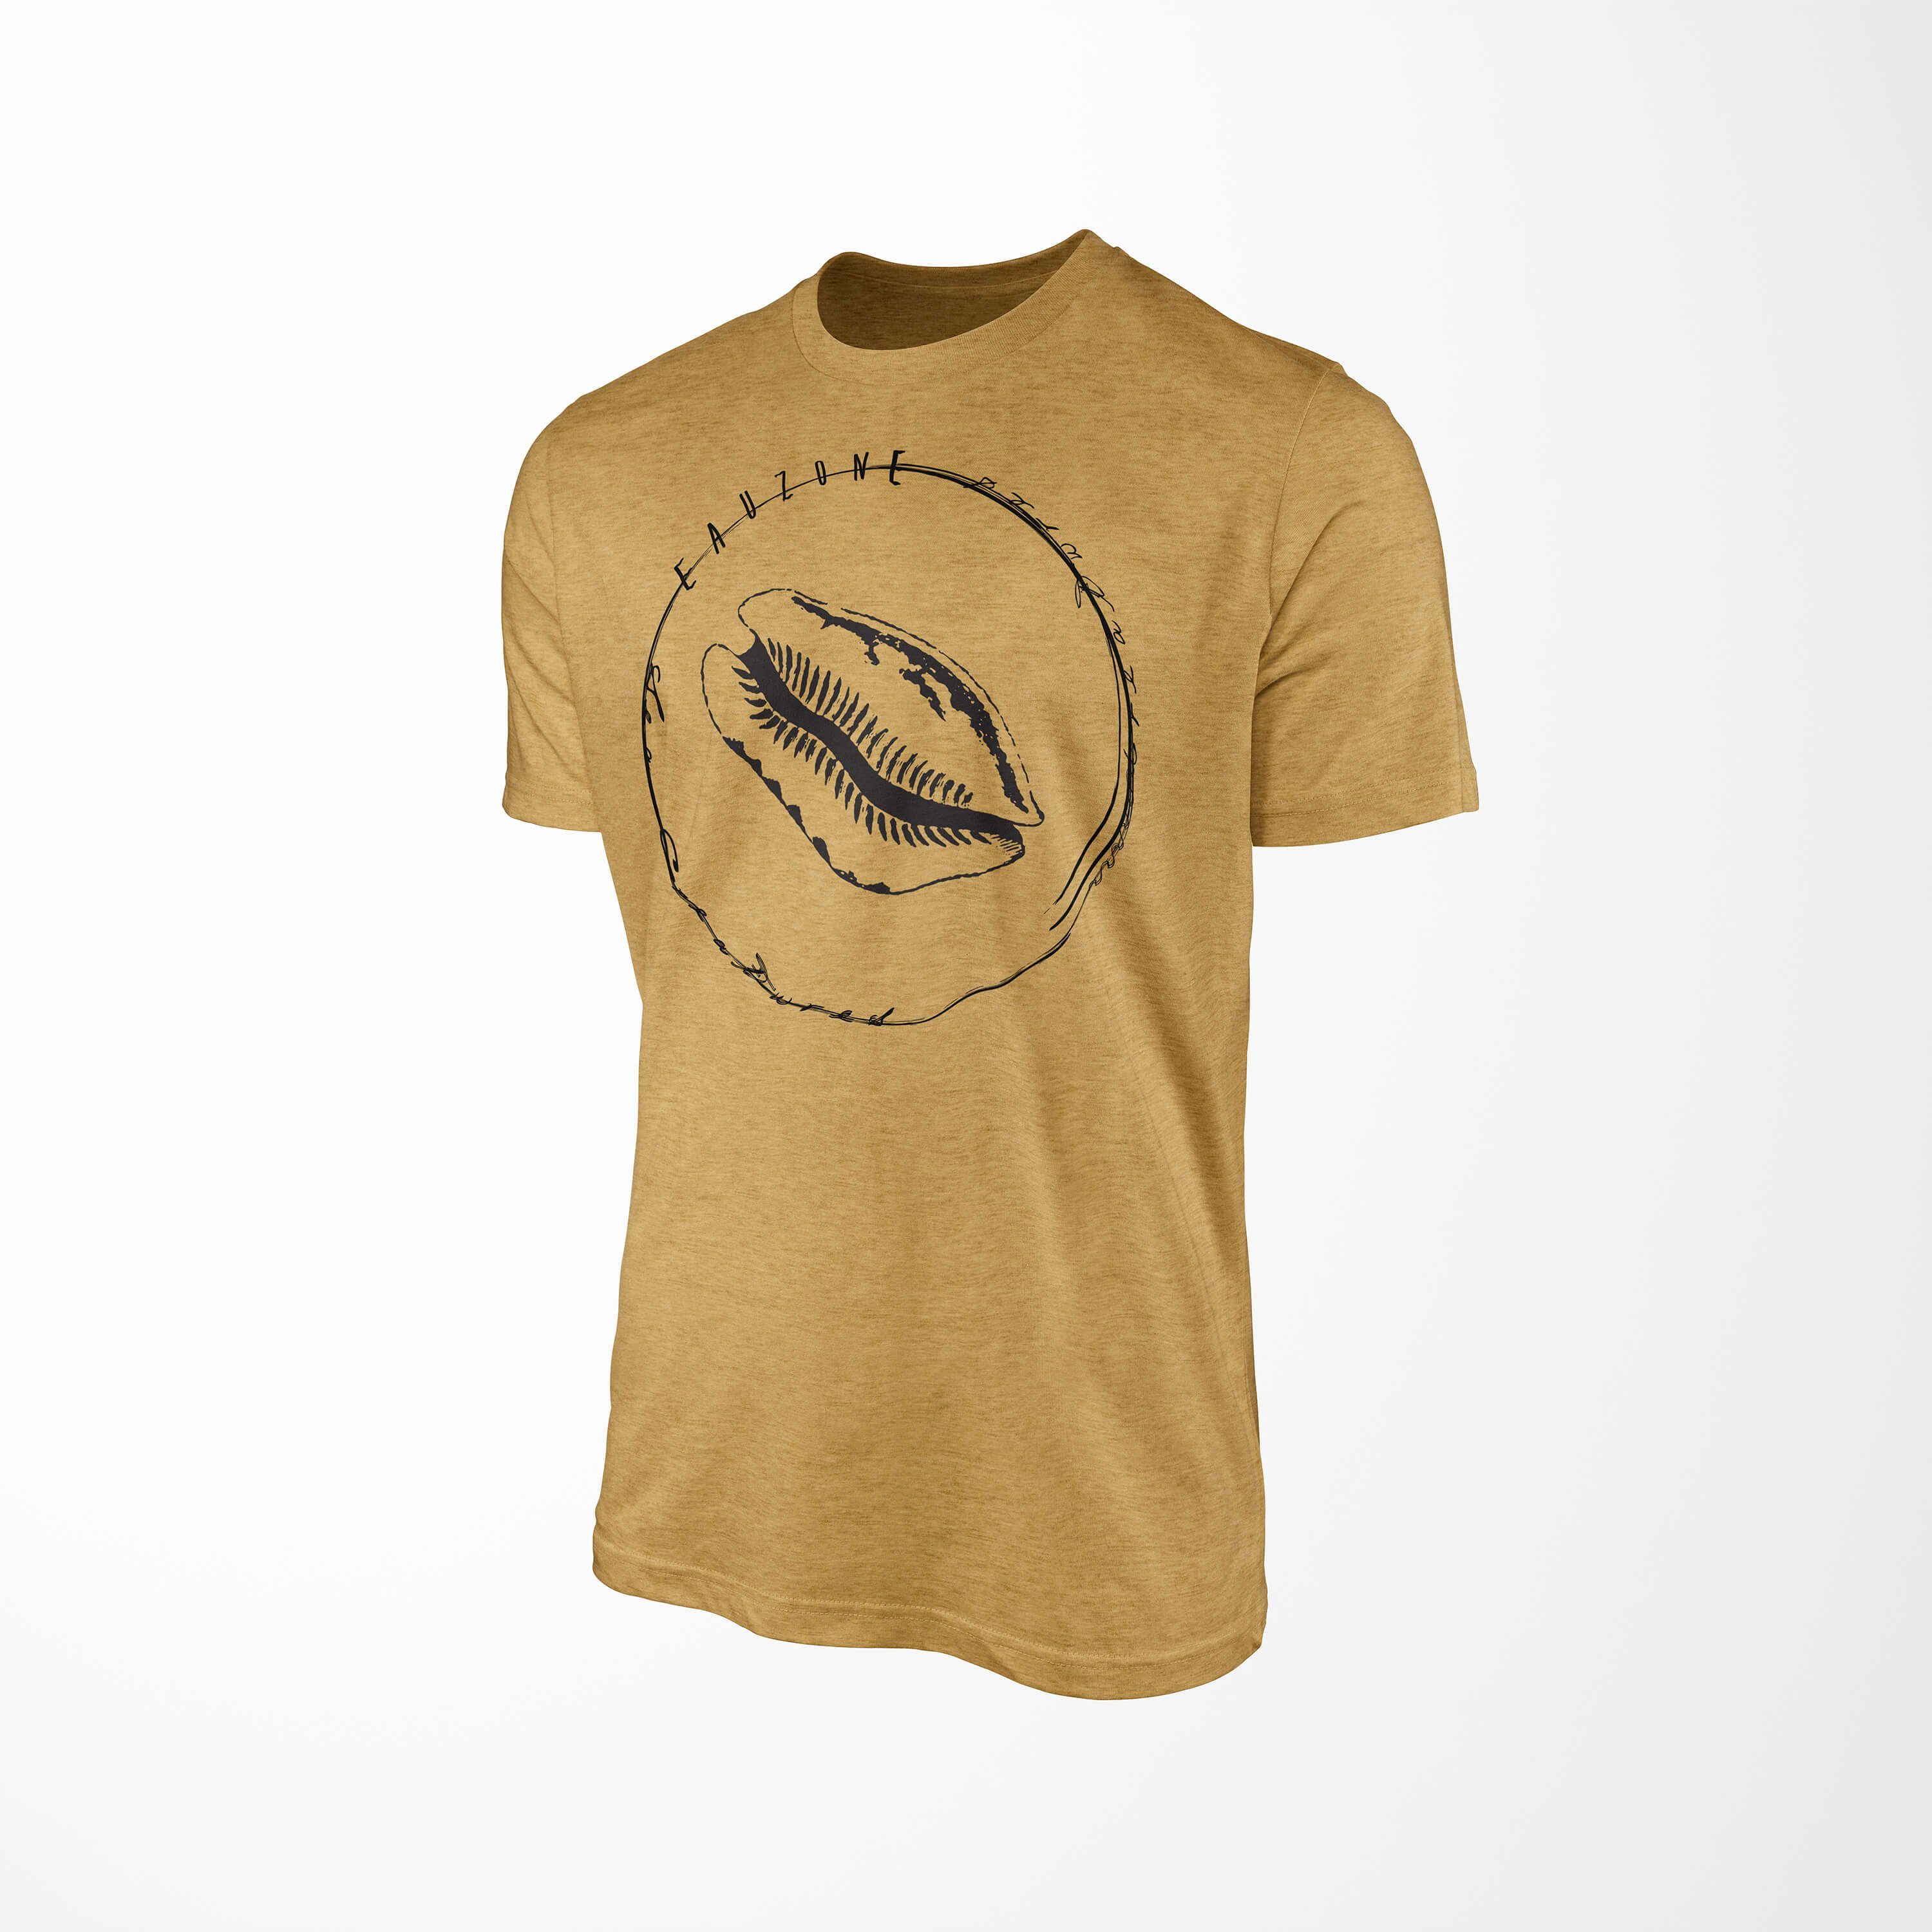 Tiefsee Gold 008 und sportlicher - Sea Antique Schnitt Art feine Serie: Sea / Sinus Fische Struktur T-Shirt Creatures, T-Shirt